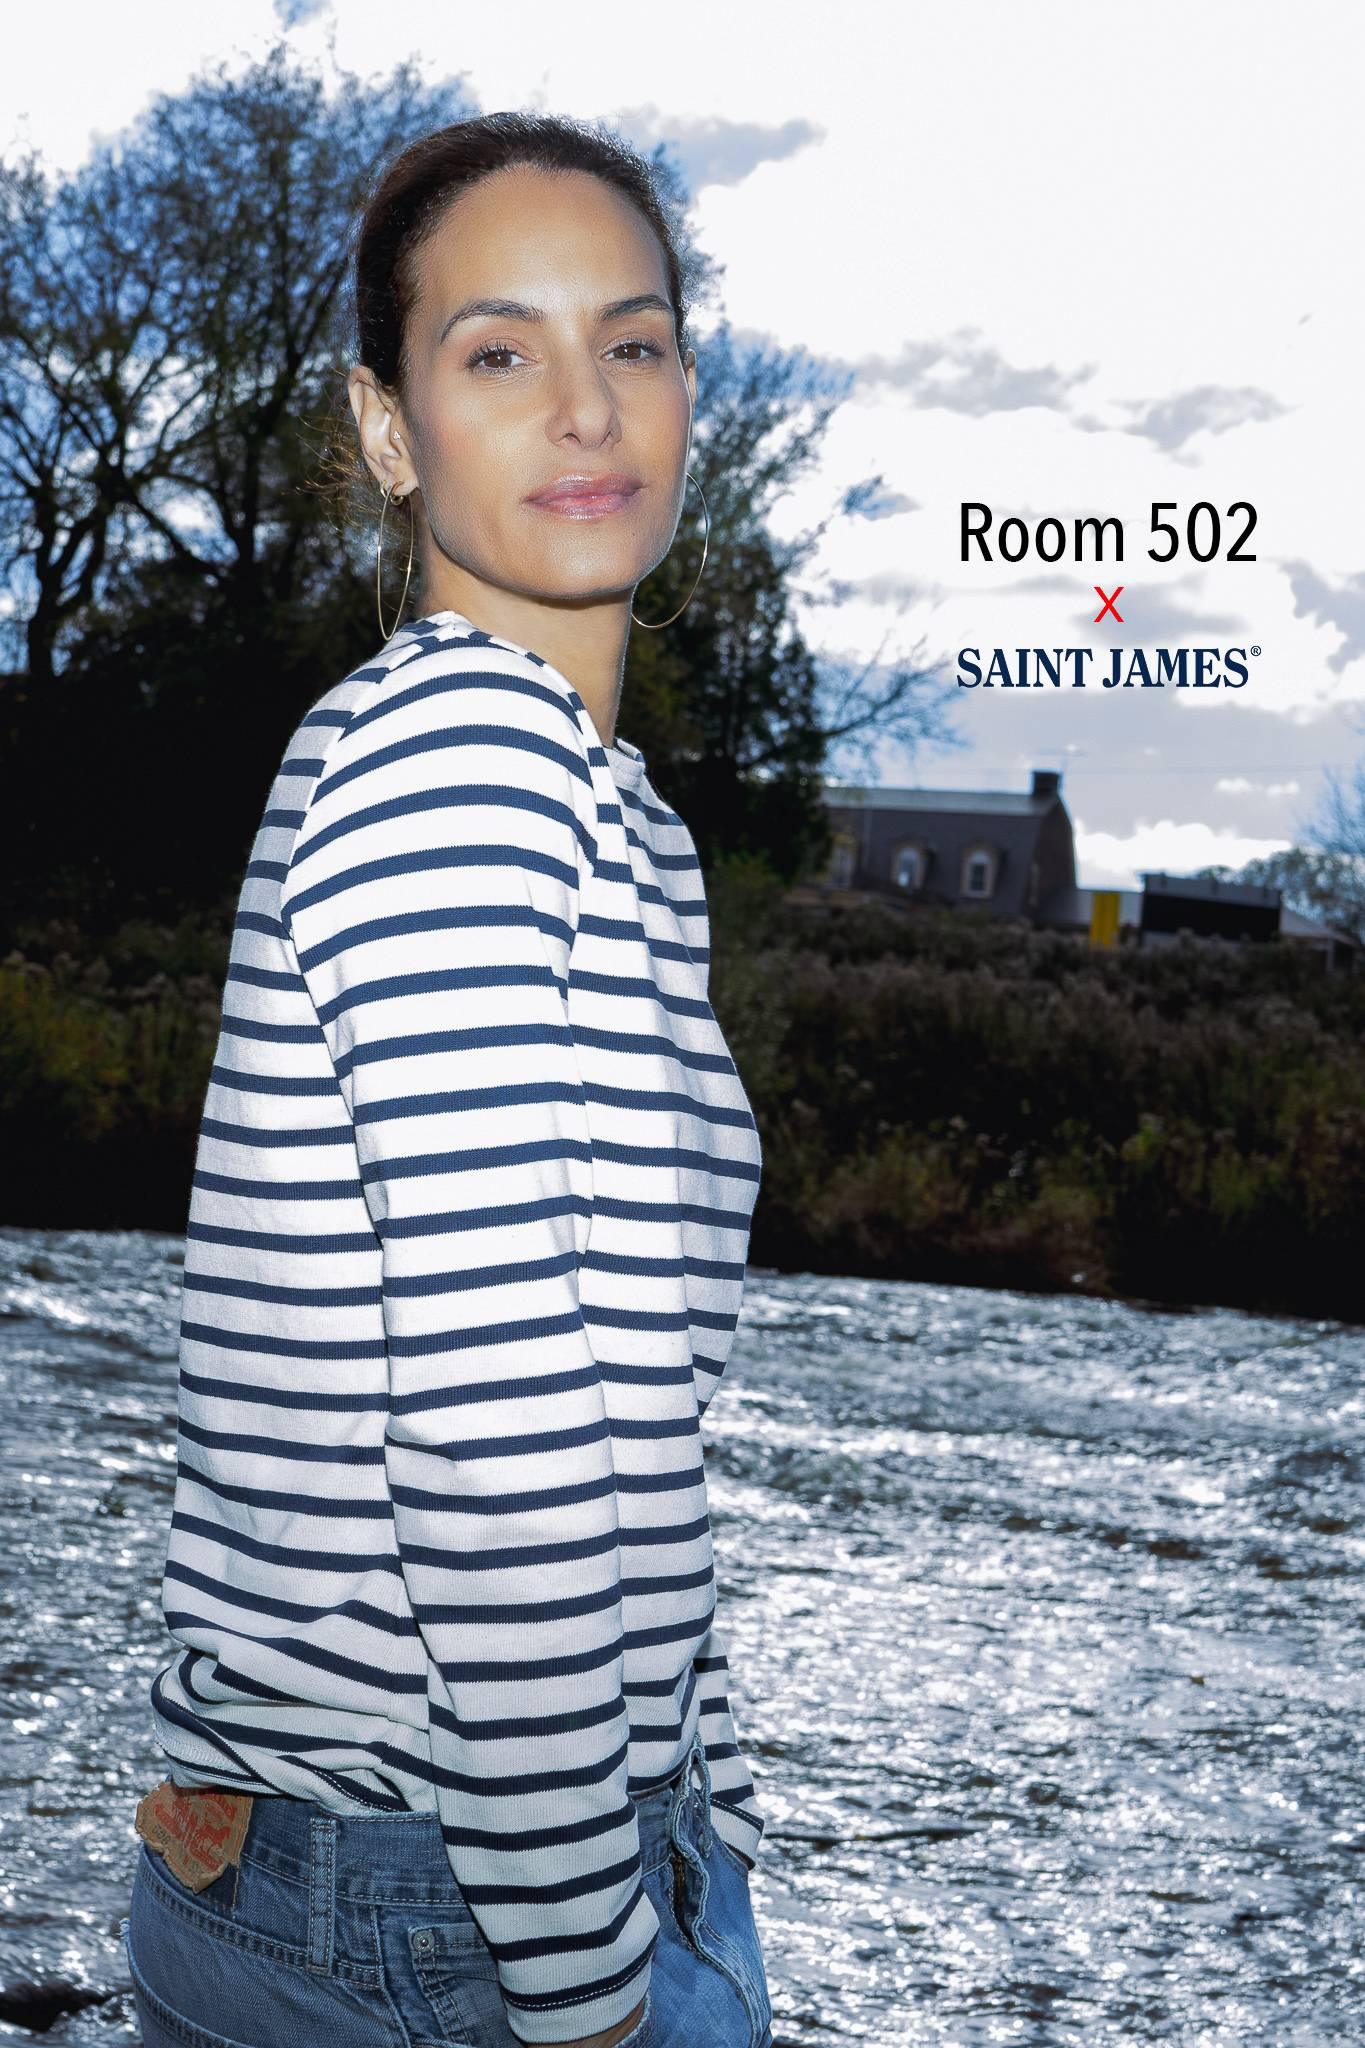 SAINT MALO TEE - ROOM 502 X SAINT JAMES - Room 502